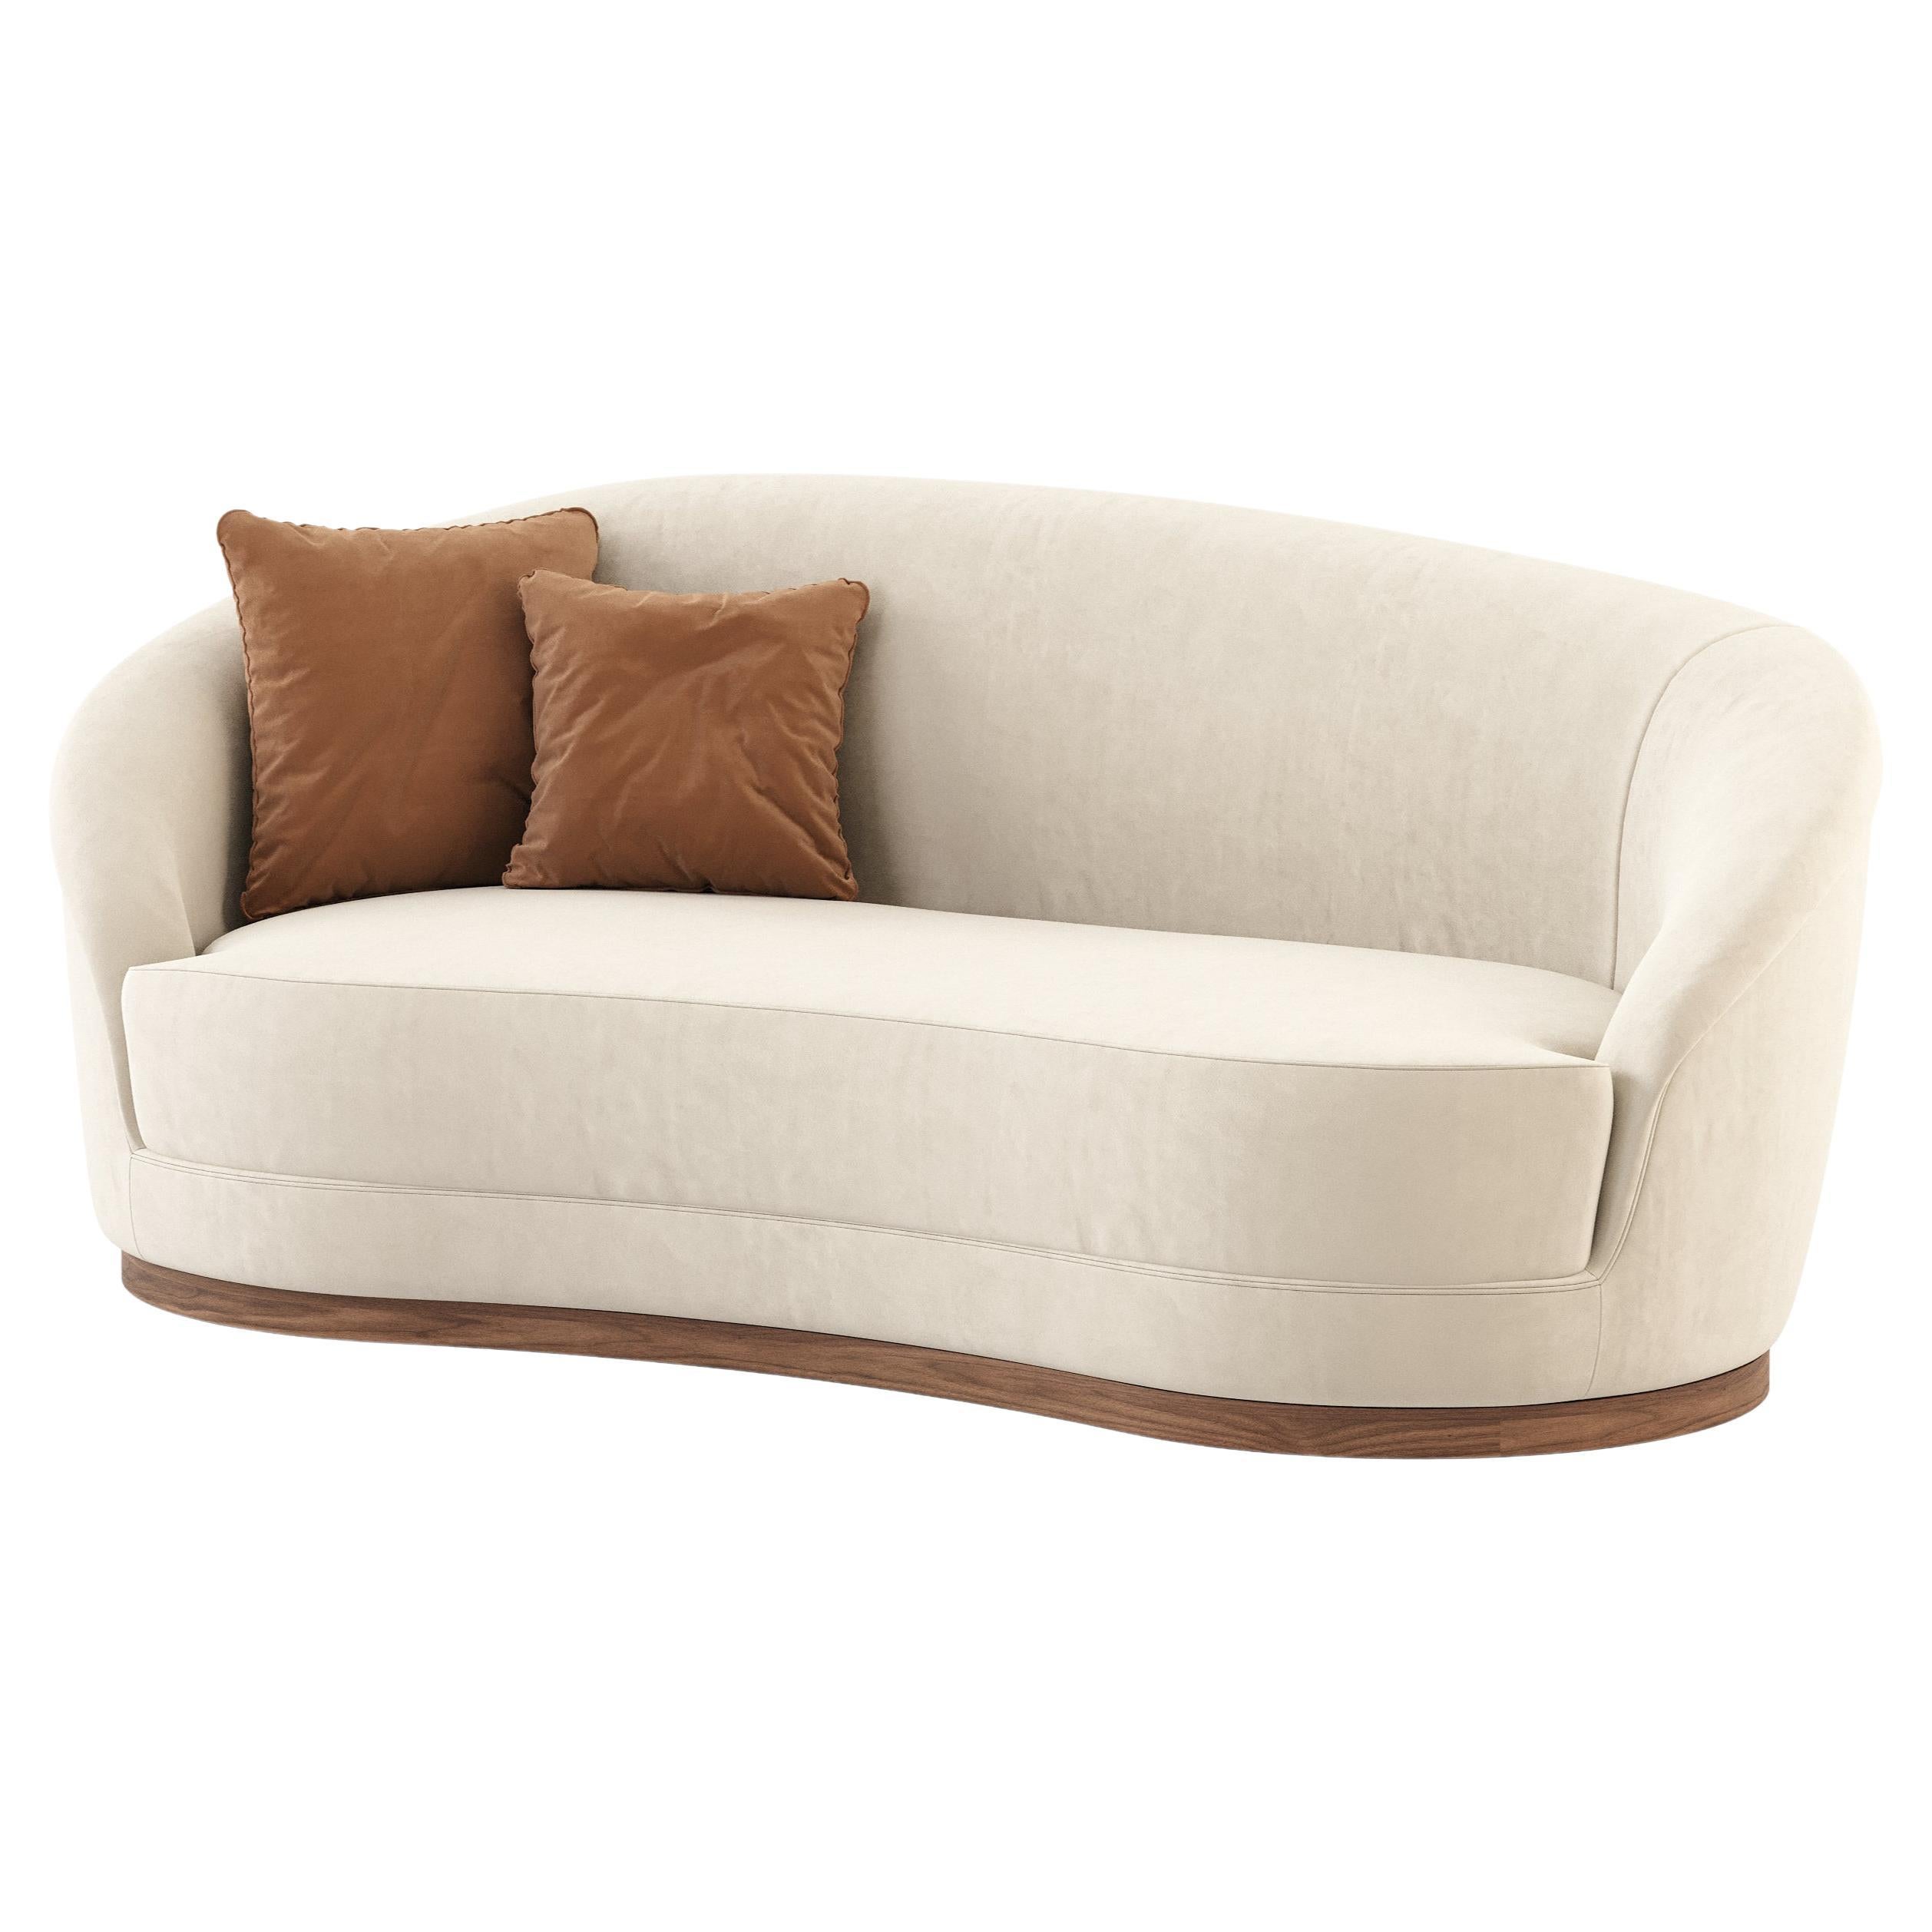 Modernes Hilary-Sofa aus Holz und Textilien, handgefertigt von Stylish Club